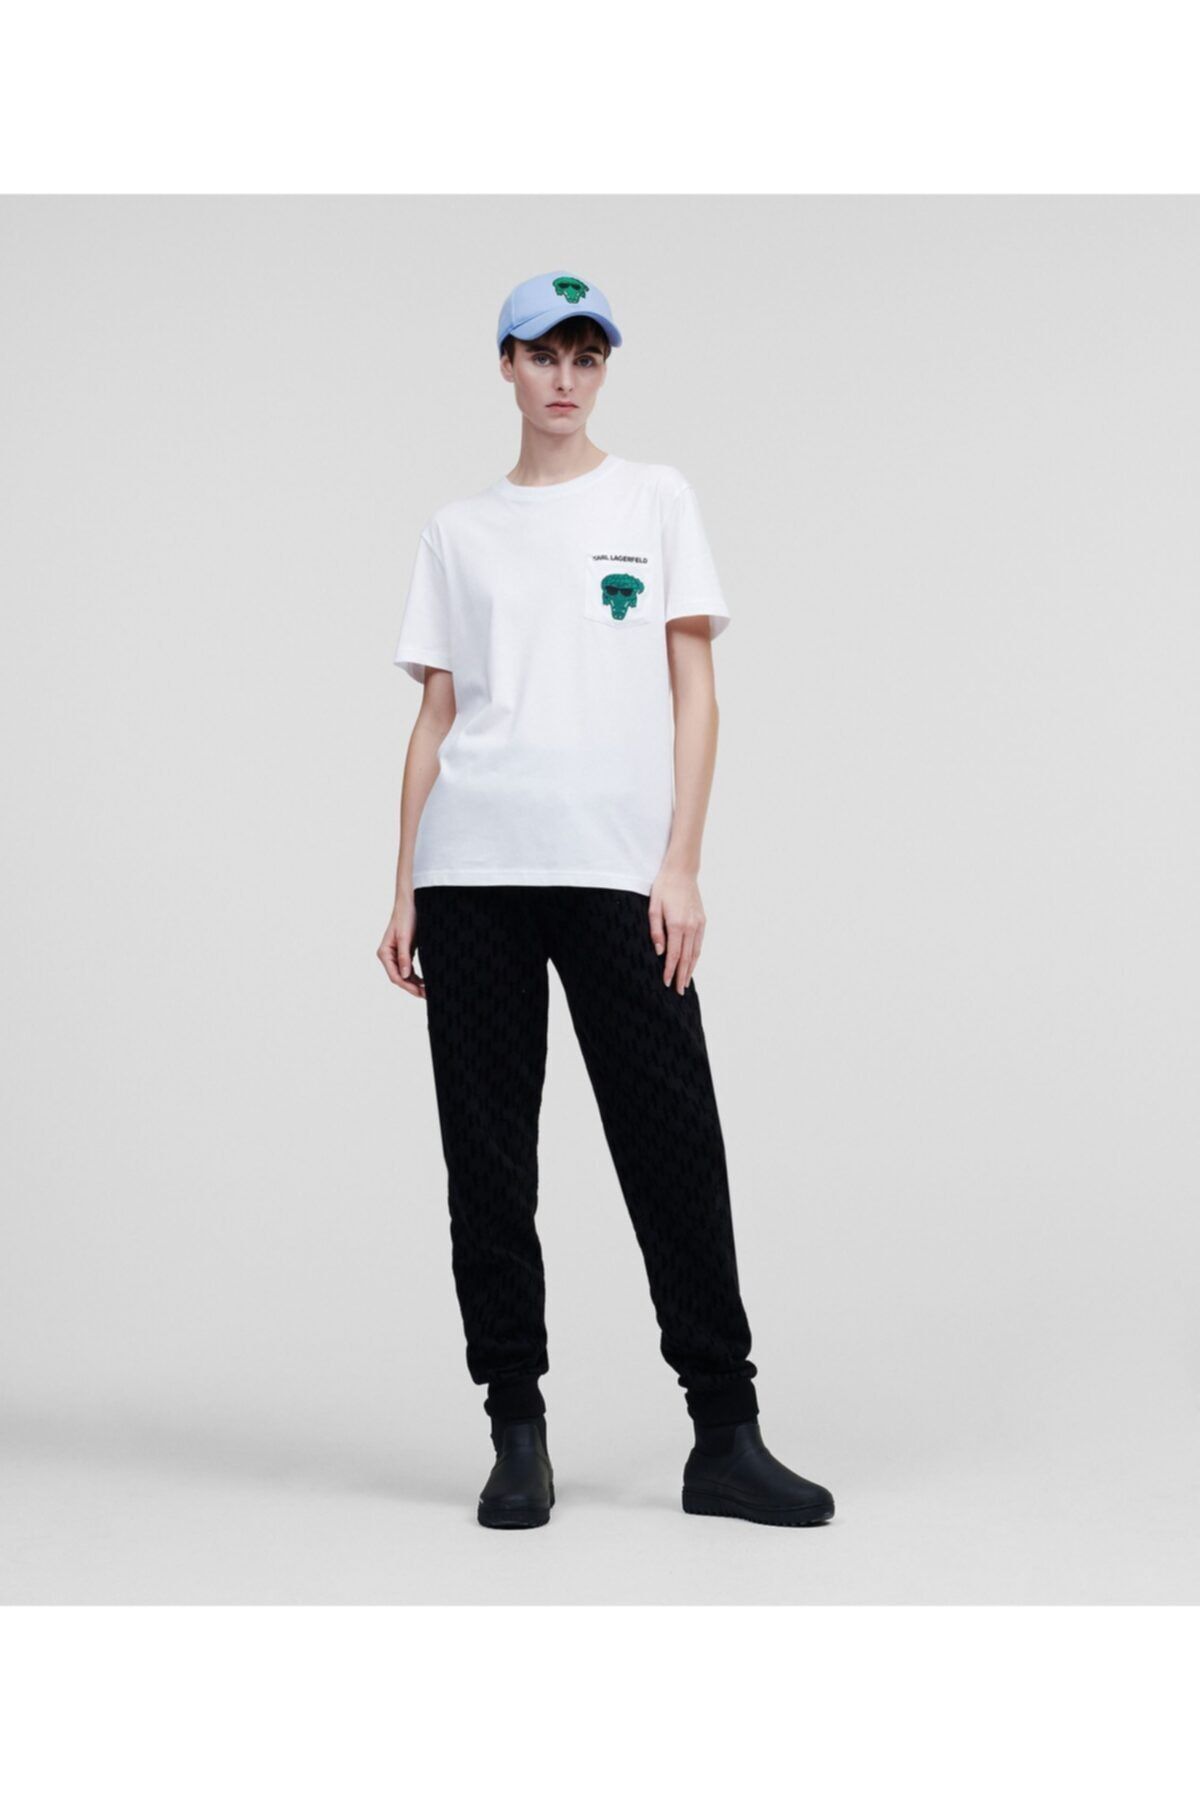 Karl Lagerfeld Ikonik Karlimal Pocket White Oversize Woman T-shirt